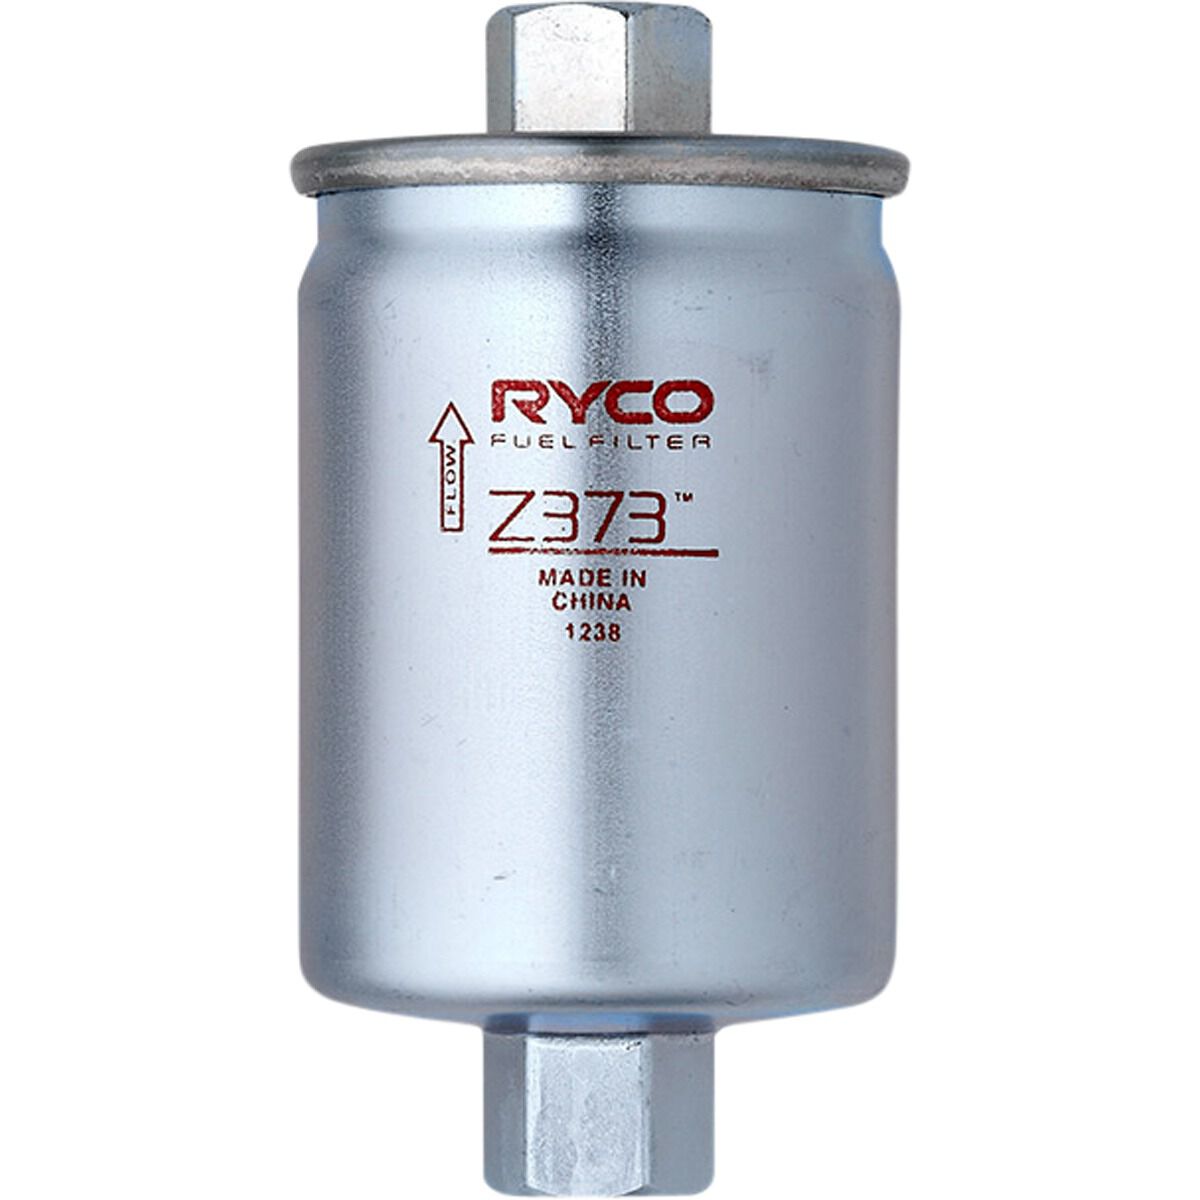 Ryco Fuel Filter - Z373, , scaau_hi-res